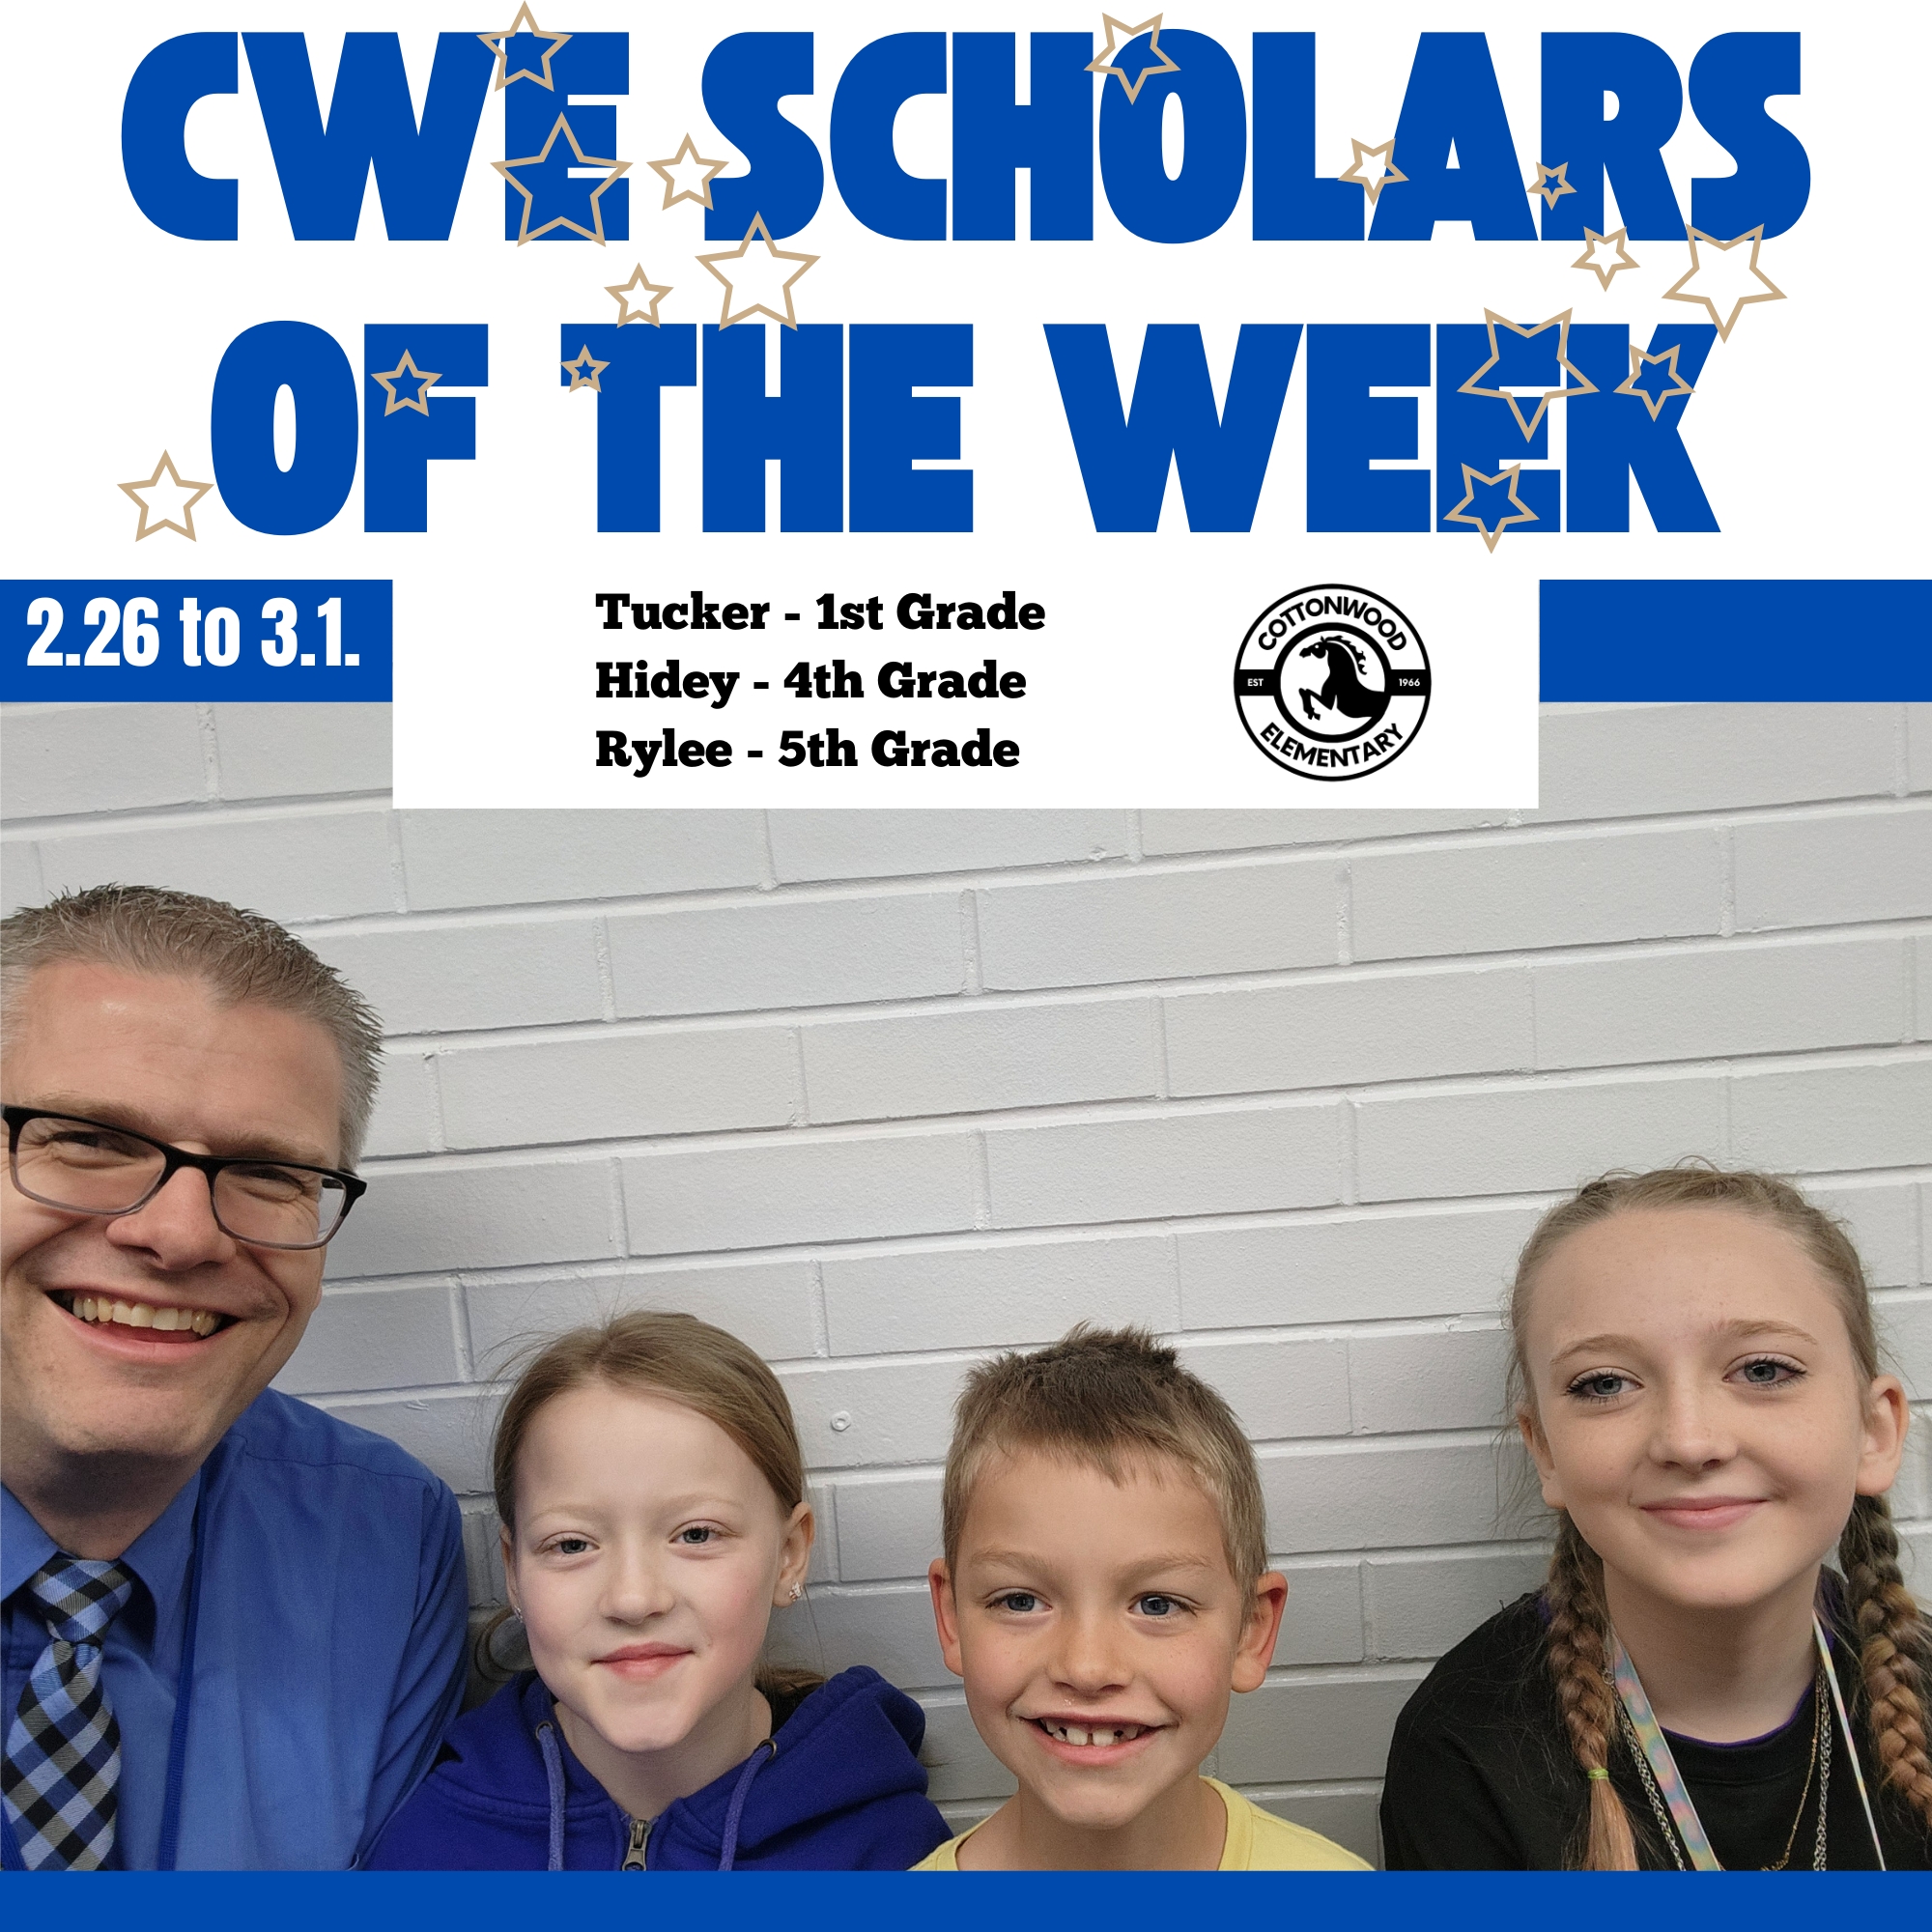 CWE-Scholars-of-the-Week-2.26-to-3.1.jpg